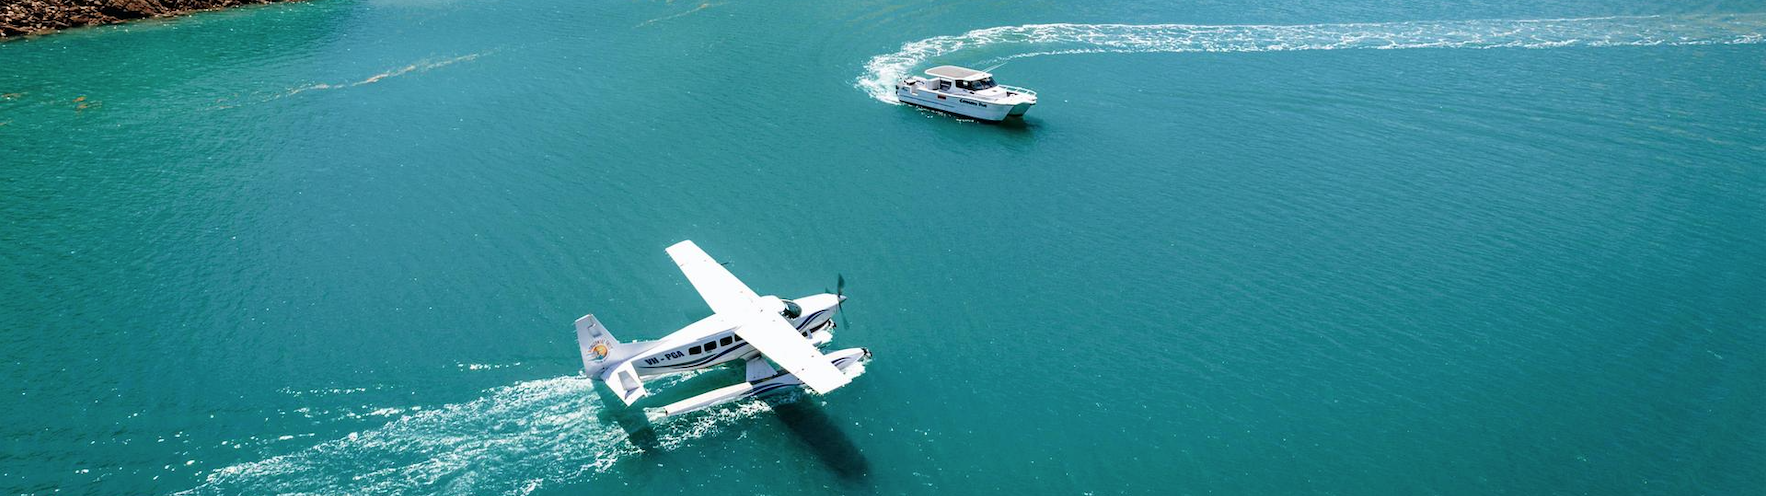 Derby Australia sebuah pesawat terbang dan bot di dalam air